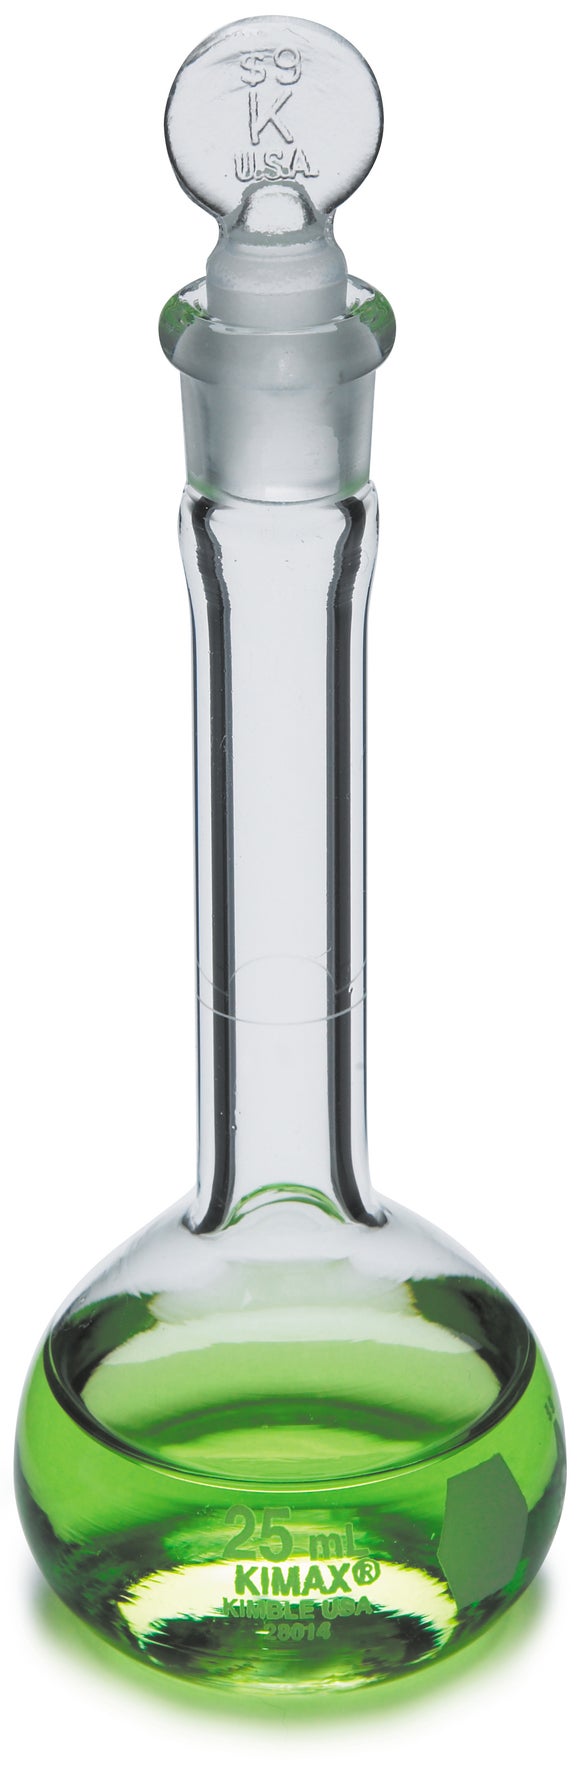 Flask, volumetric class A, glass, 250 mL